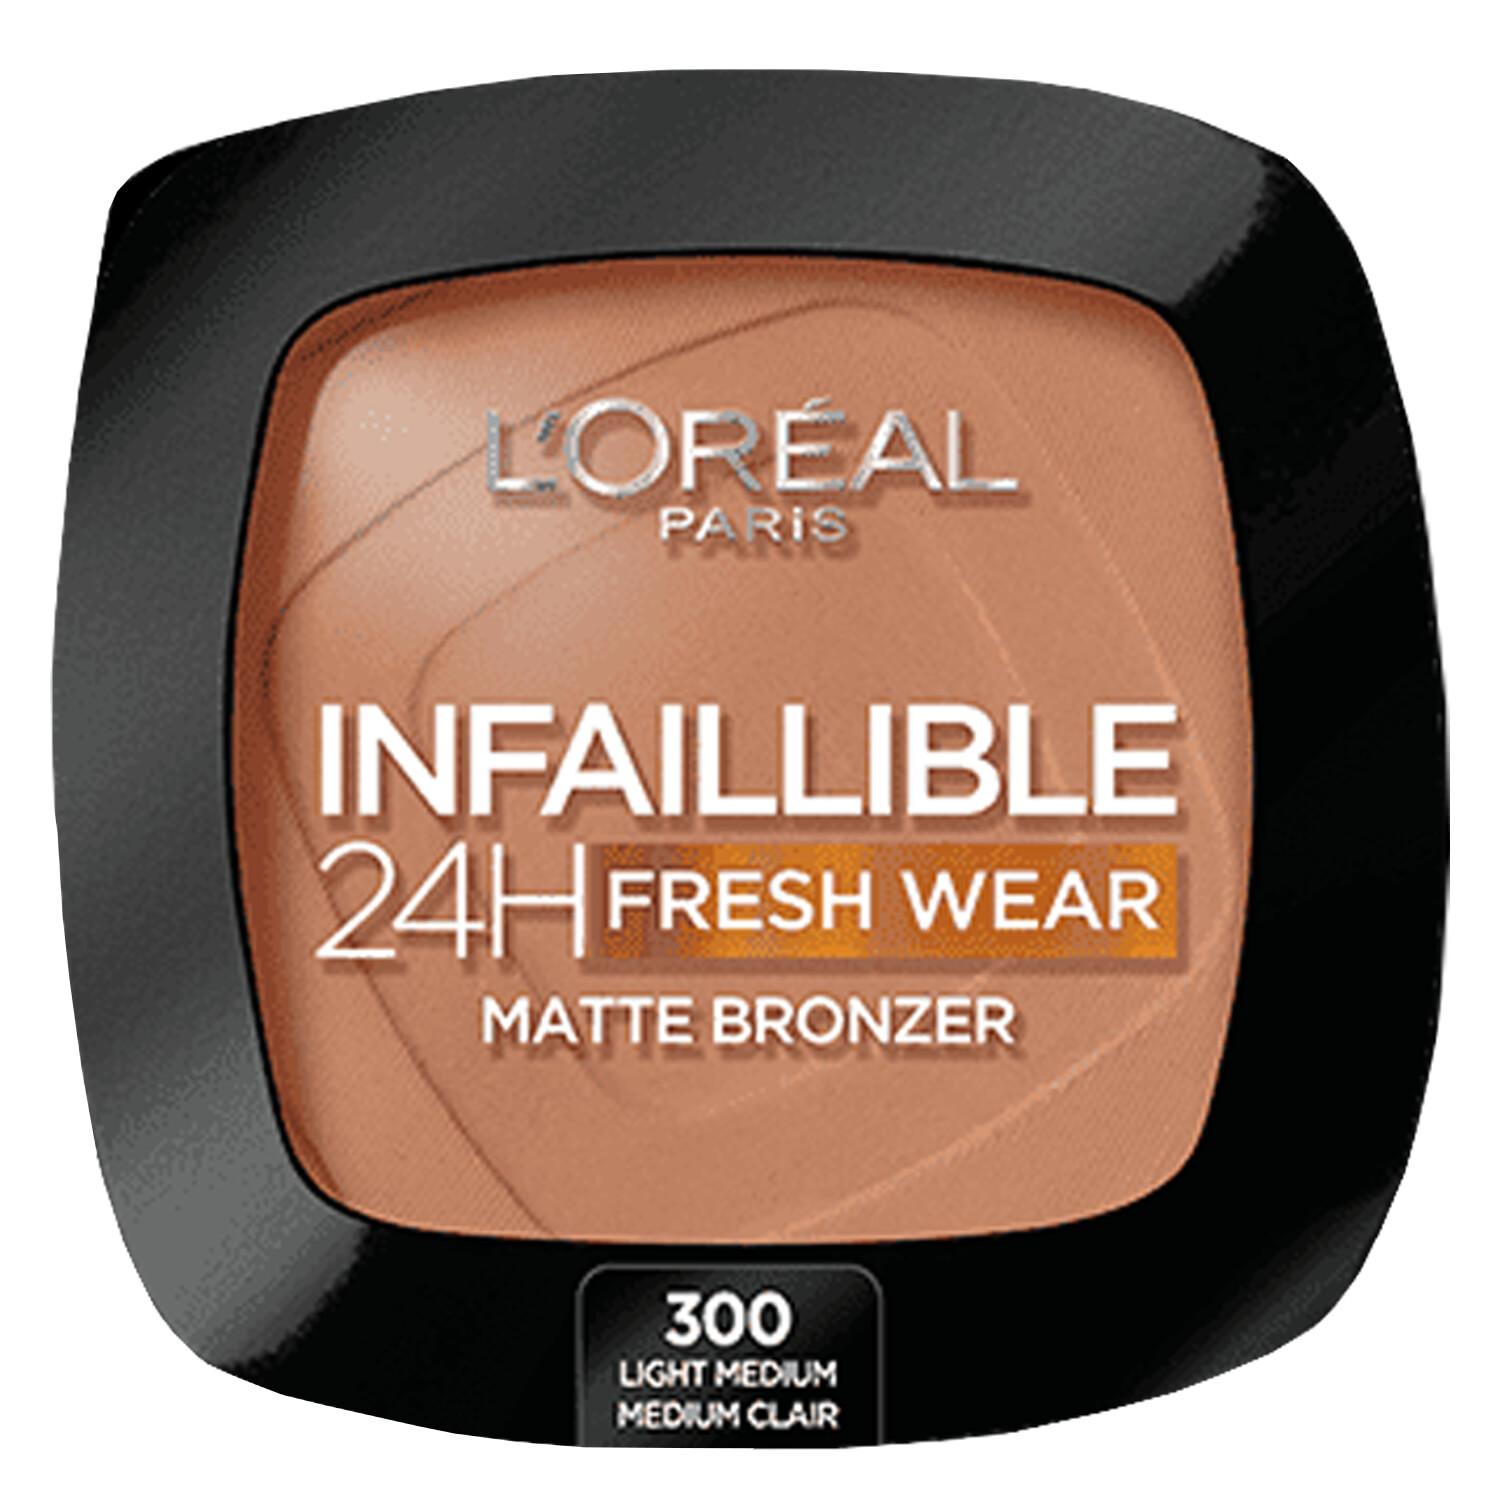 LOréal Infaillible - 24H Fresh Wear Matte Bronzer 300 Light Medium